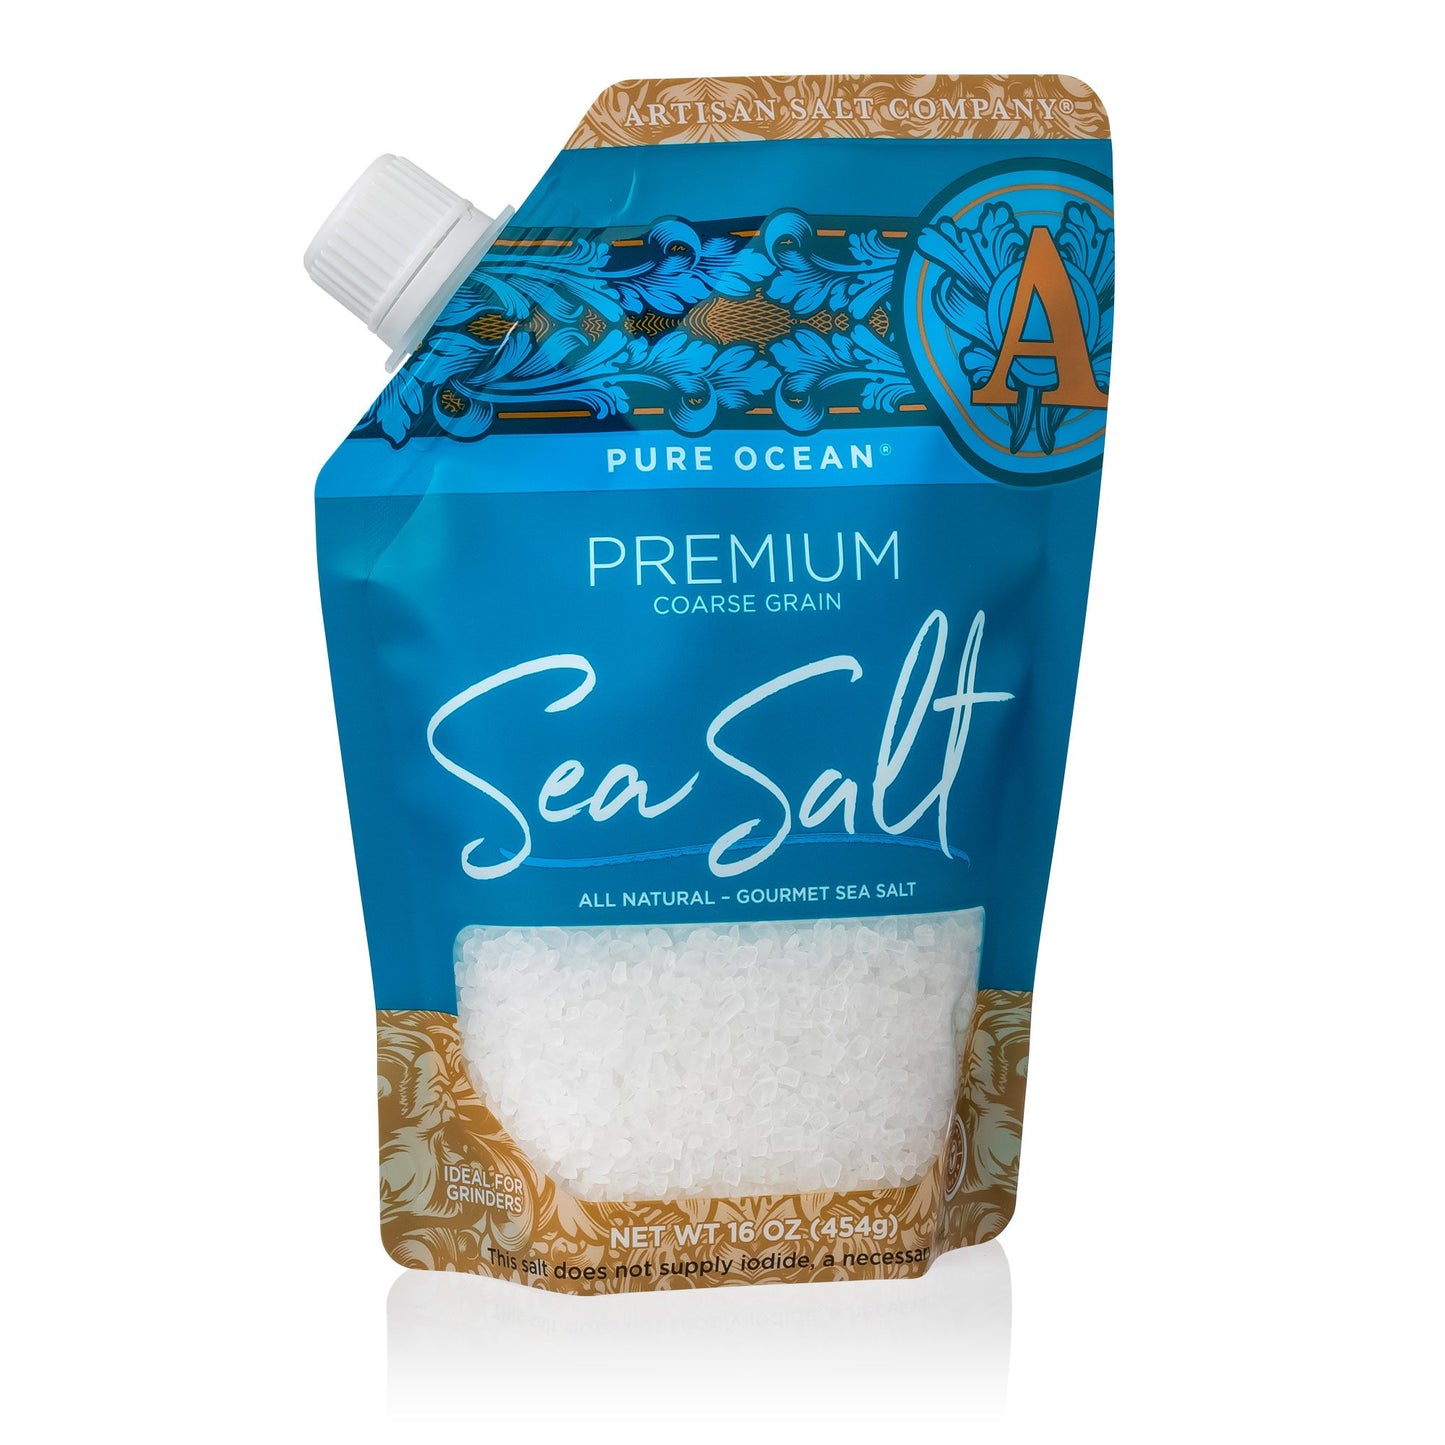 PURE OCEAN® Premium Sea Salt